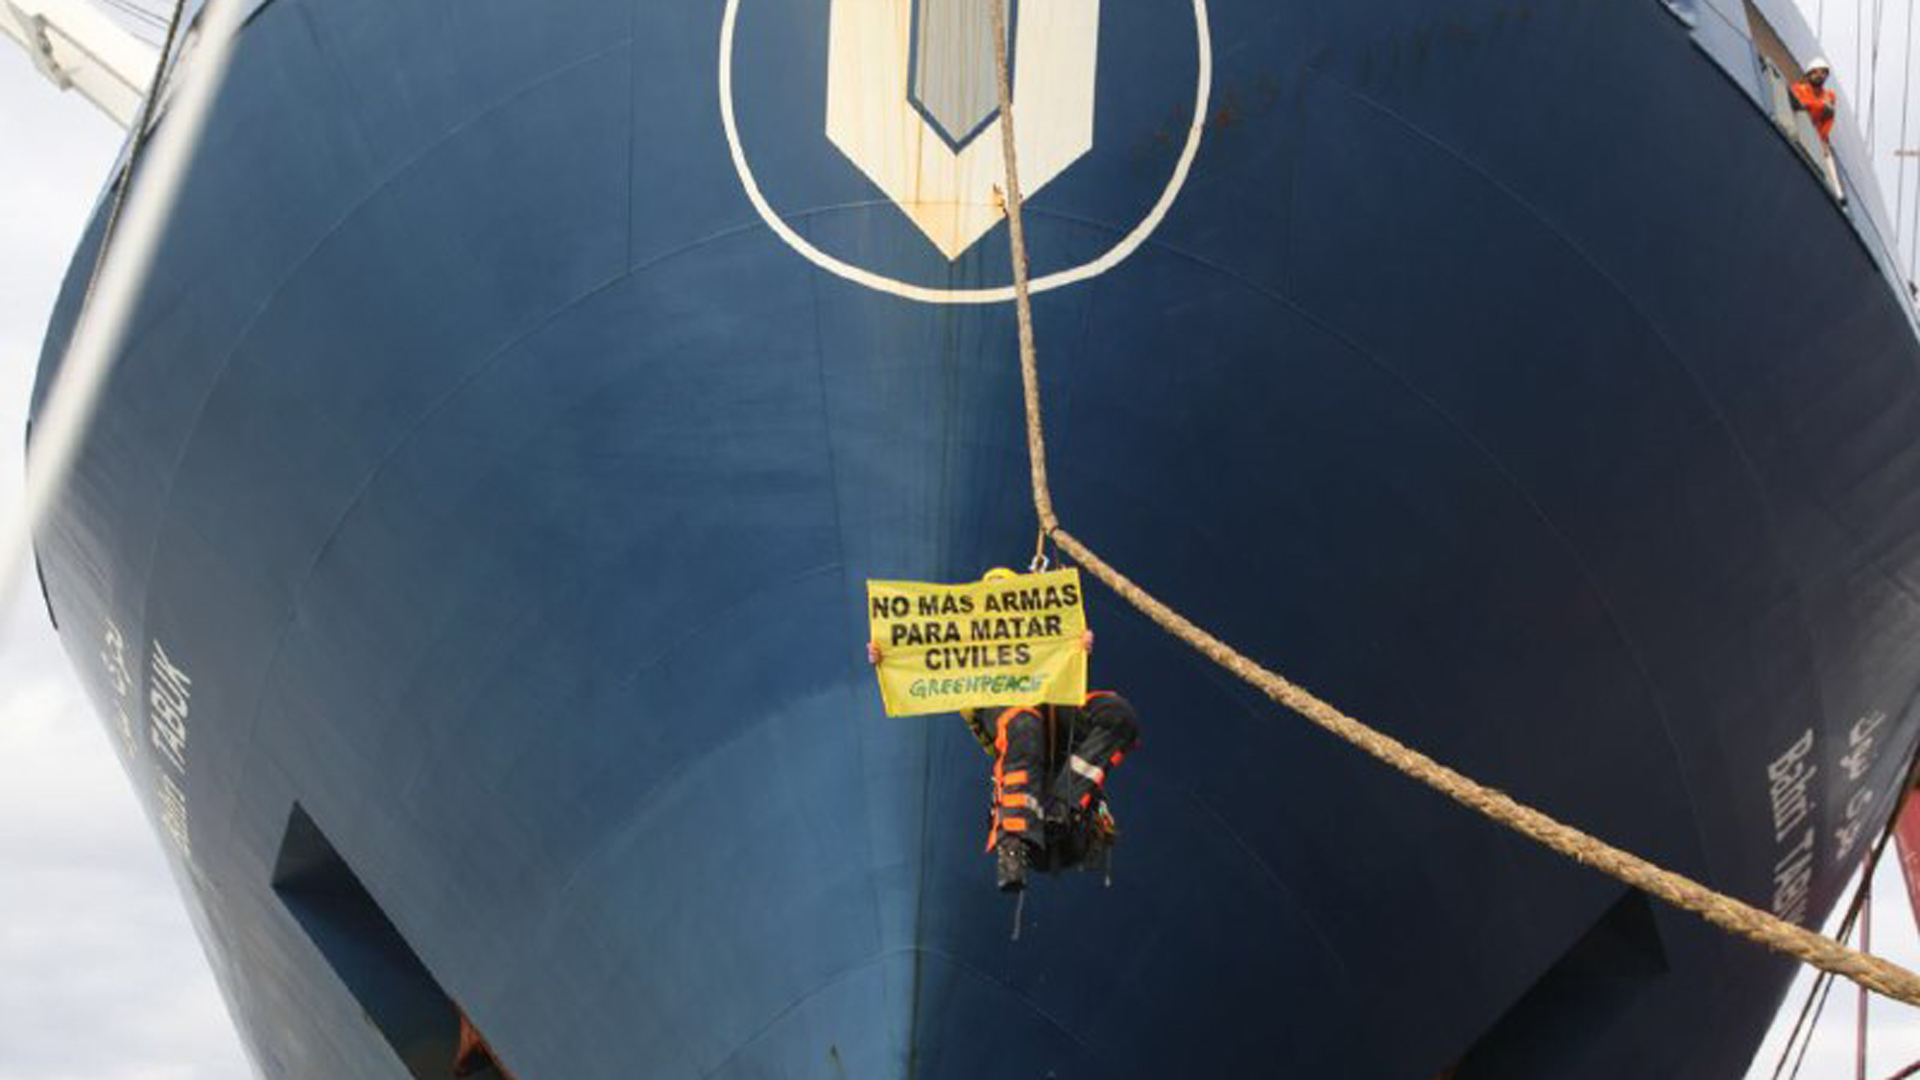 Nueva protesta de Greenpeace en Bilbao por la exportación de armas a Arabia Saudí